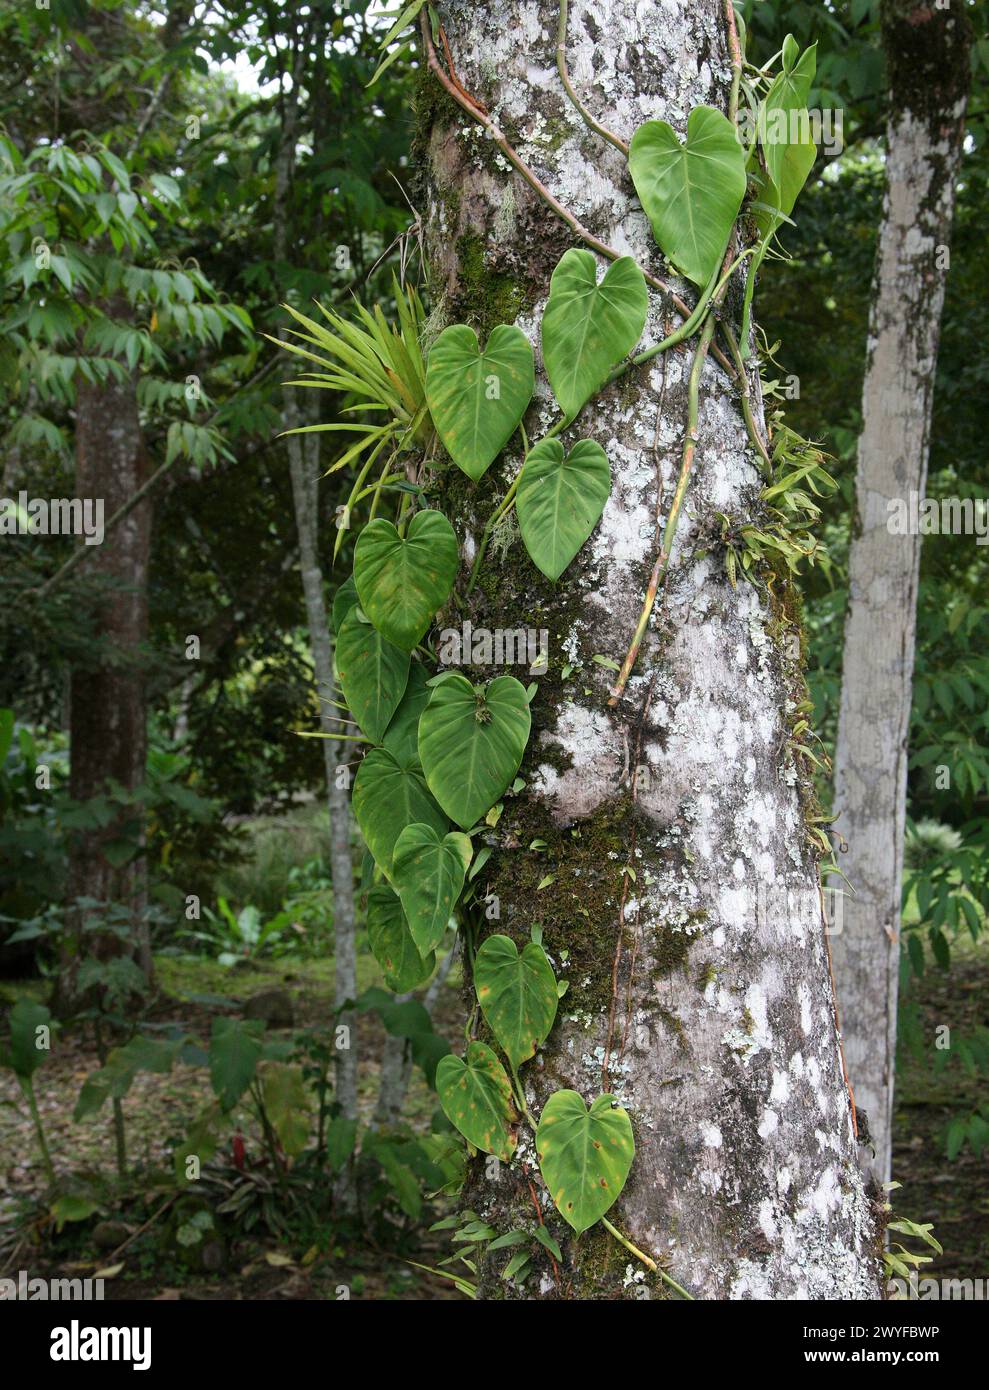 Arrowhead Plant, Syngonium macrophyllum, Araceae. Vine growing up a tree. Costa Rica. Syngonium is a genus of flowering plants in the family Araceae, Stock Photo